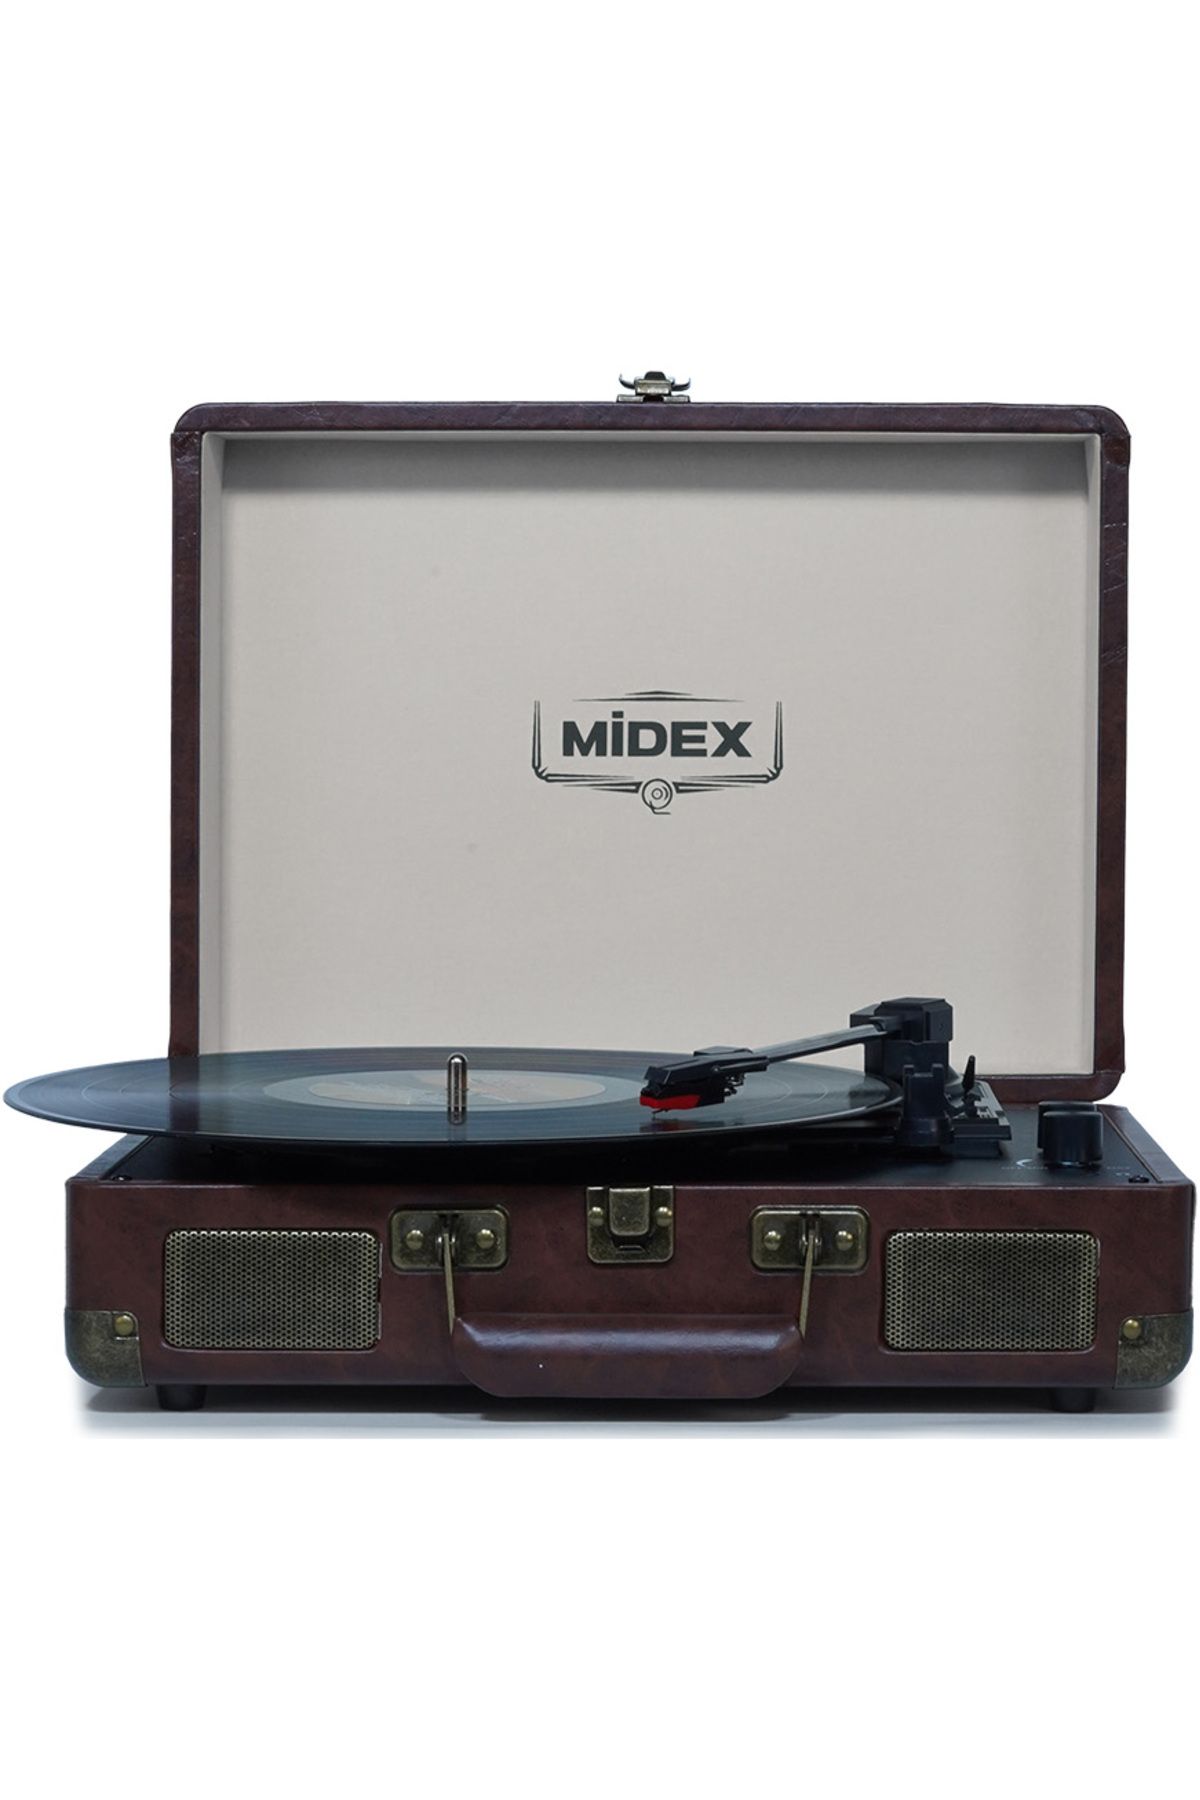 Midex Mtx-101cr Nostaljik Retro Pikap Plak Çalar (ŞARJLI BLUETOOTH AUX HOPARLÖRLÜ 3 DEVİR) I?ğne Dahil